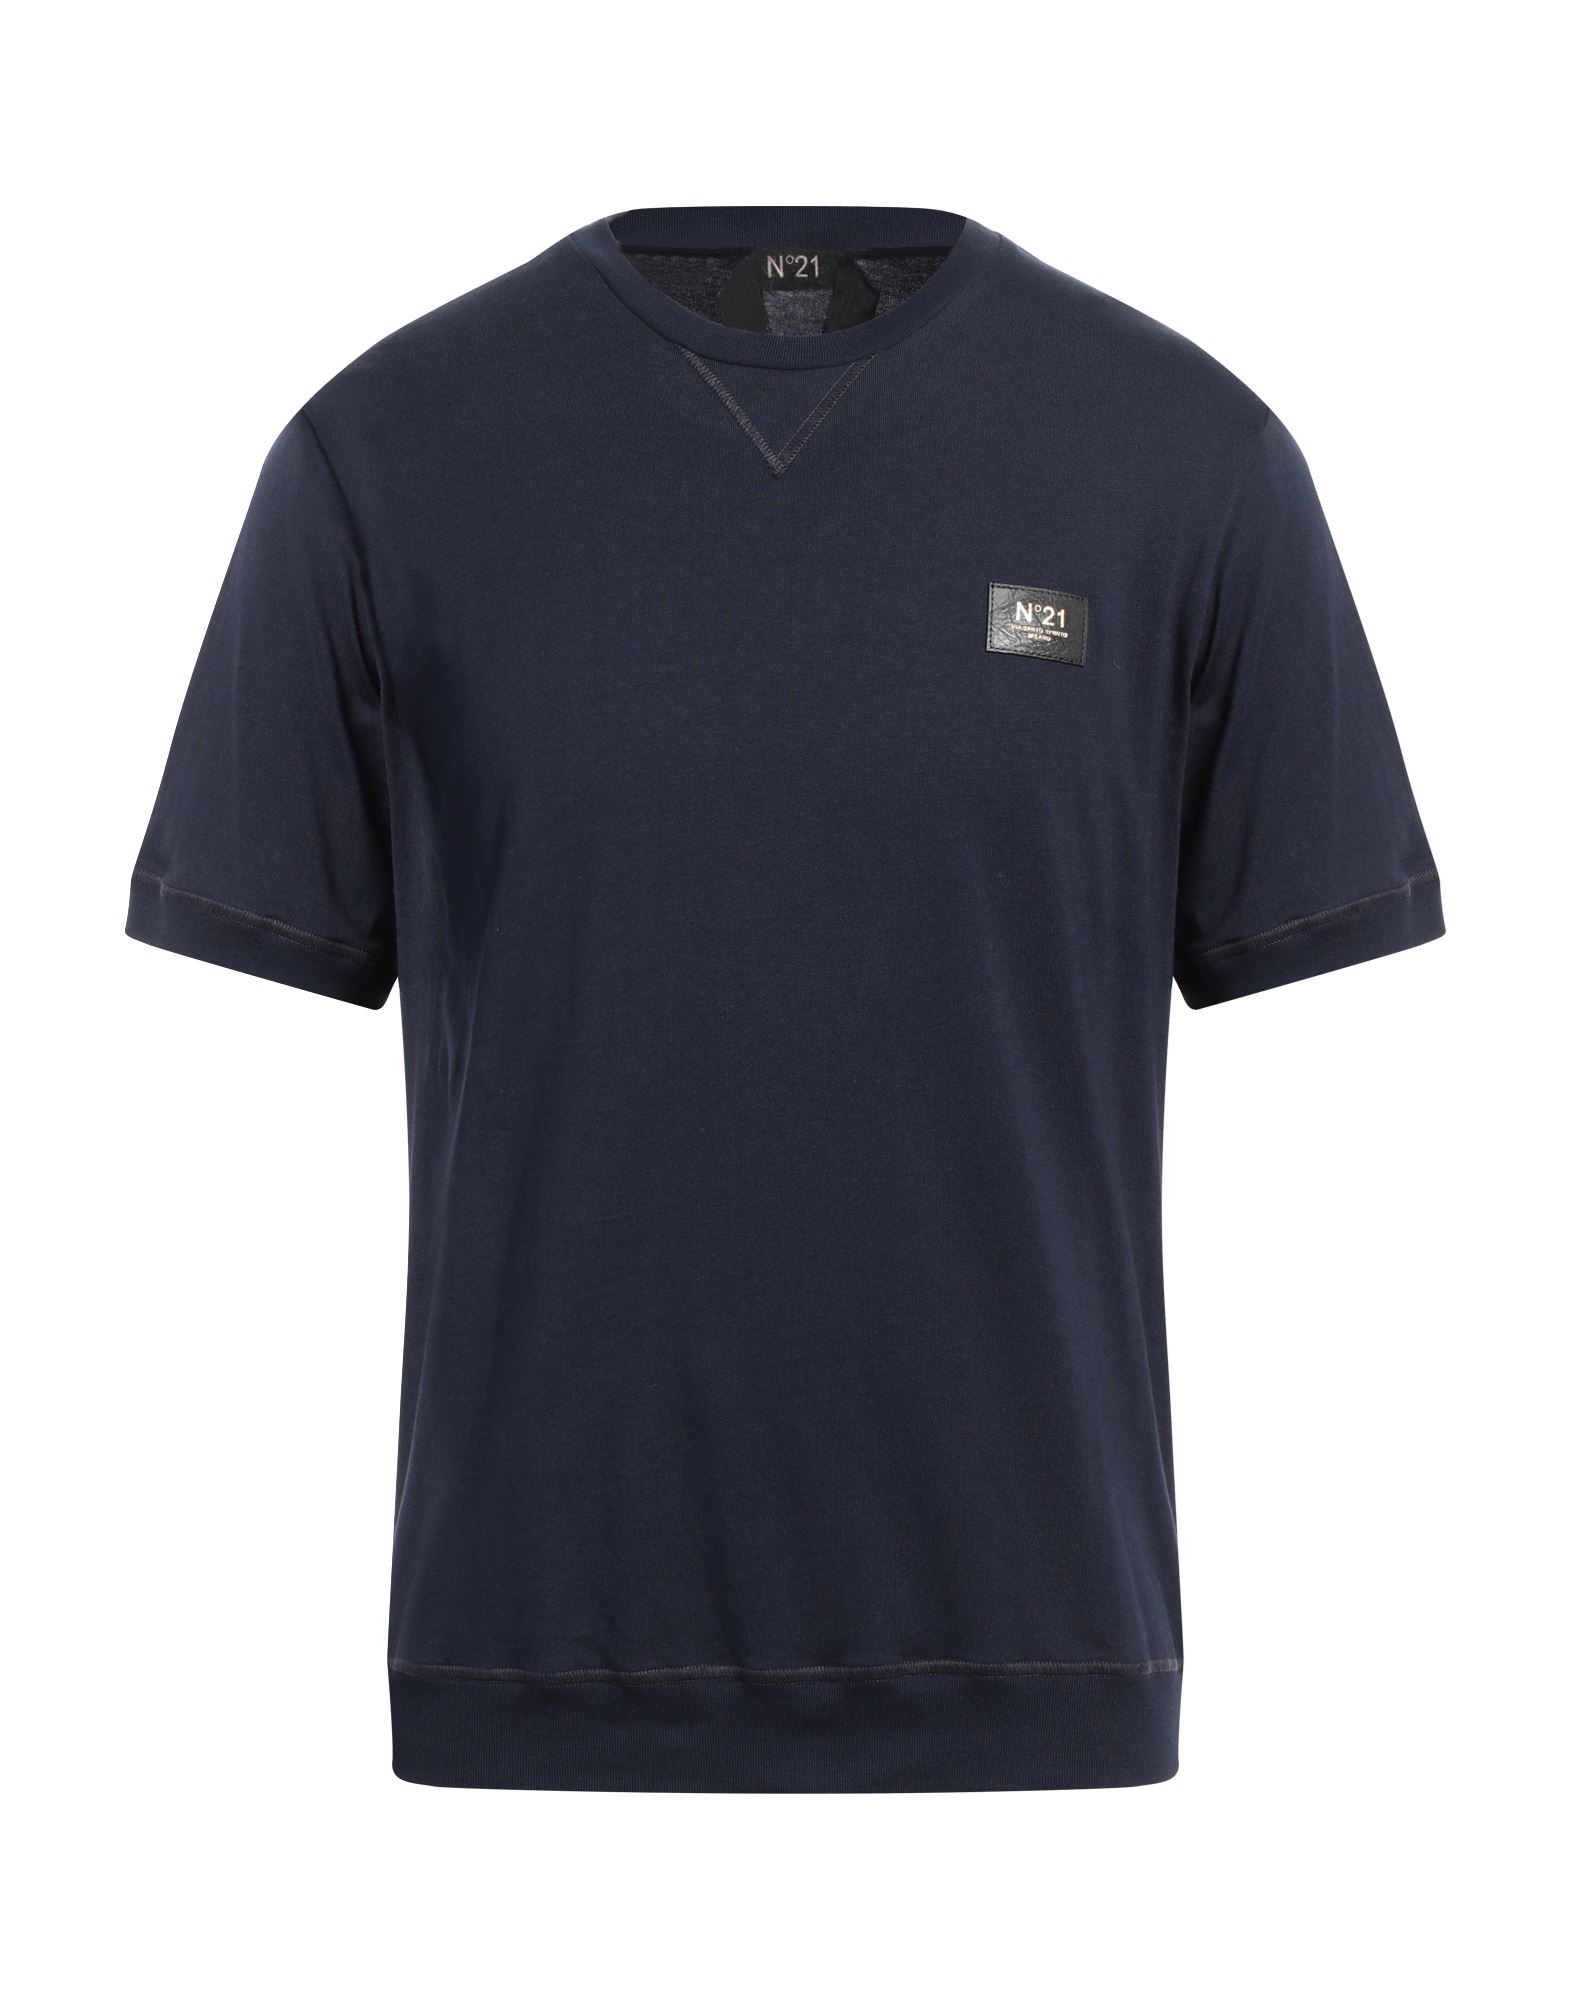 N°21 T-shirts Herren Marineblau von N°21